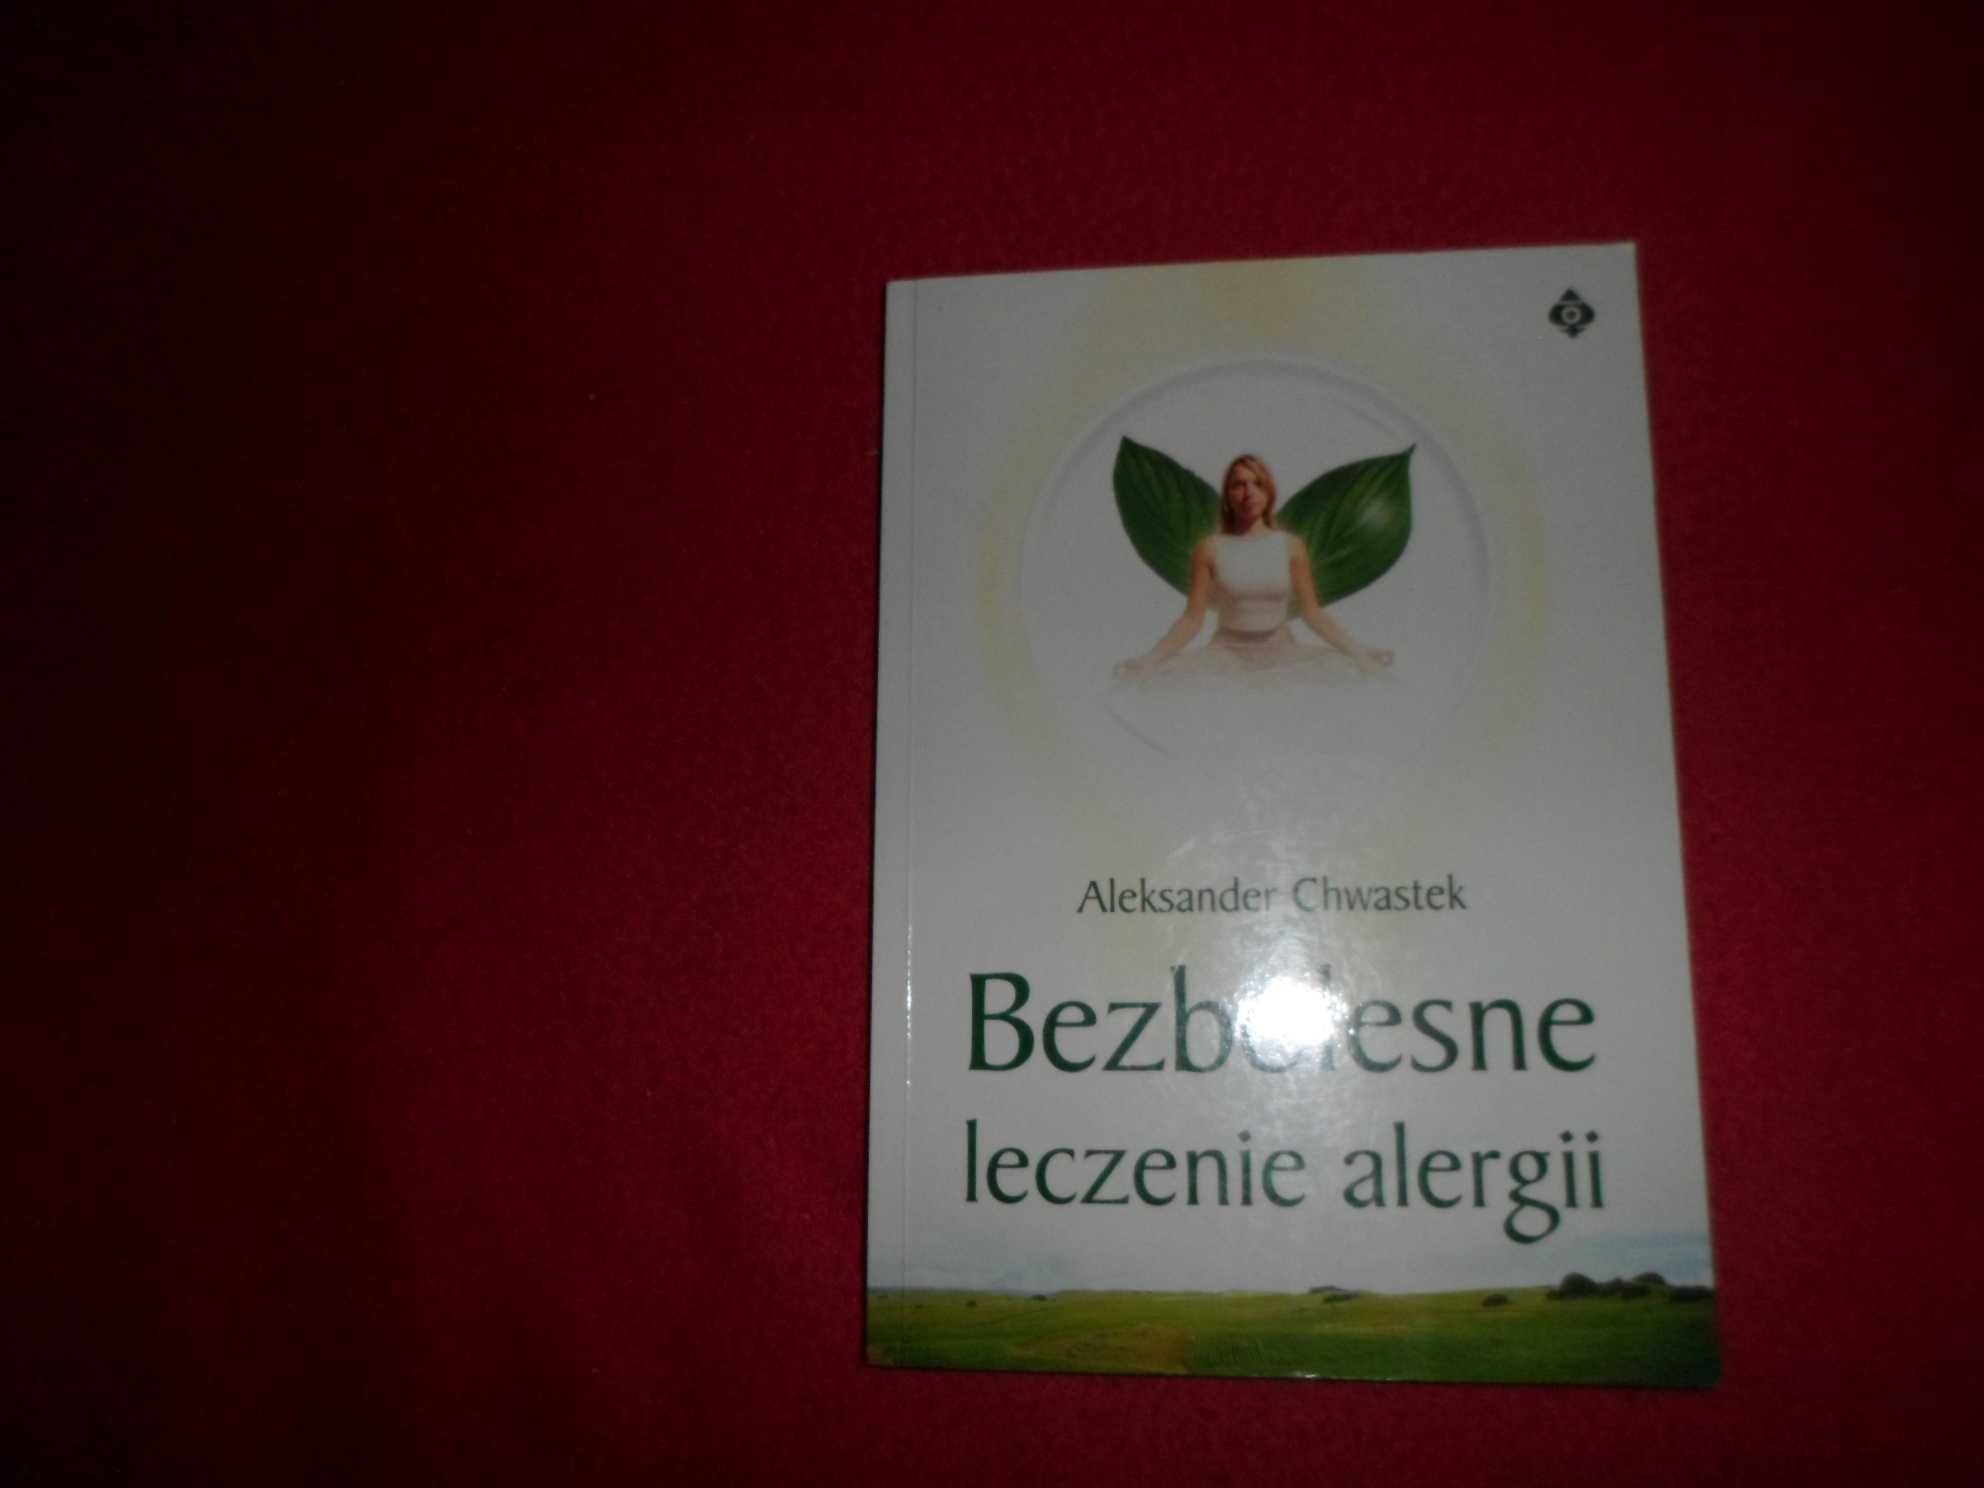 Bezbolesne leczenie alergii - Aleksander Chwastek